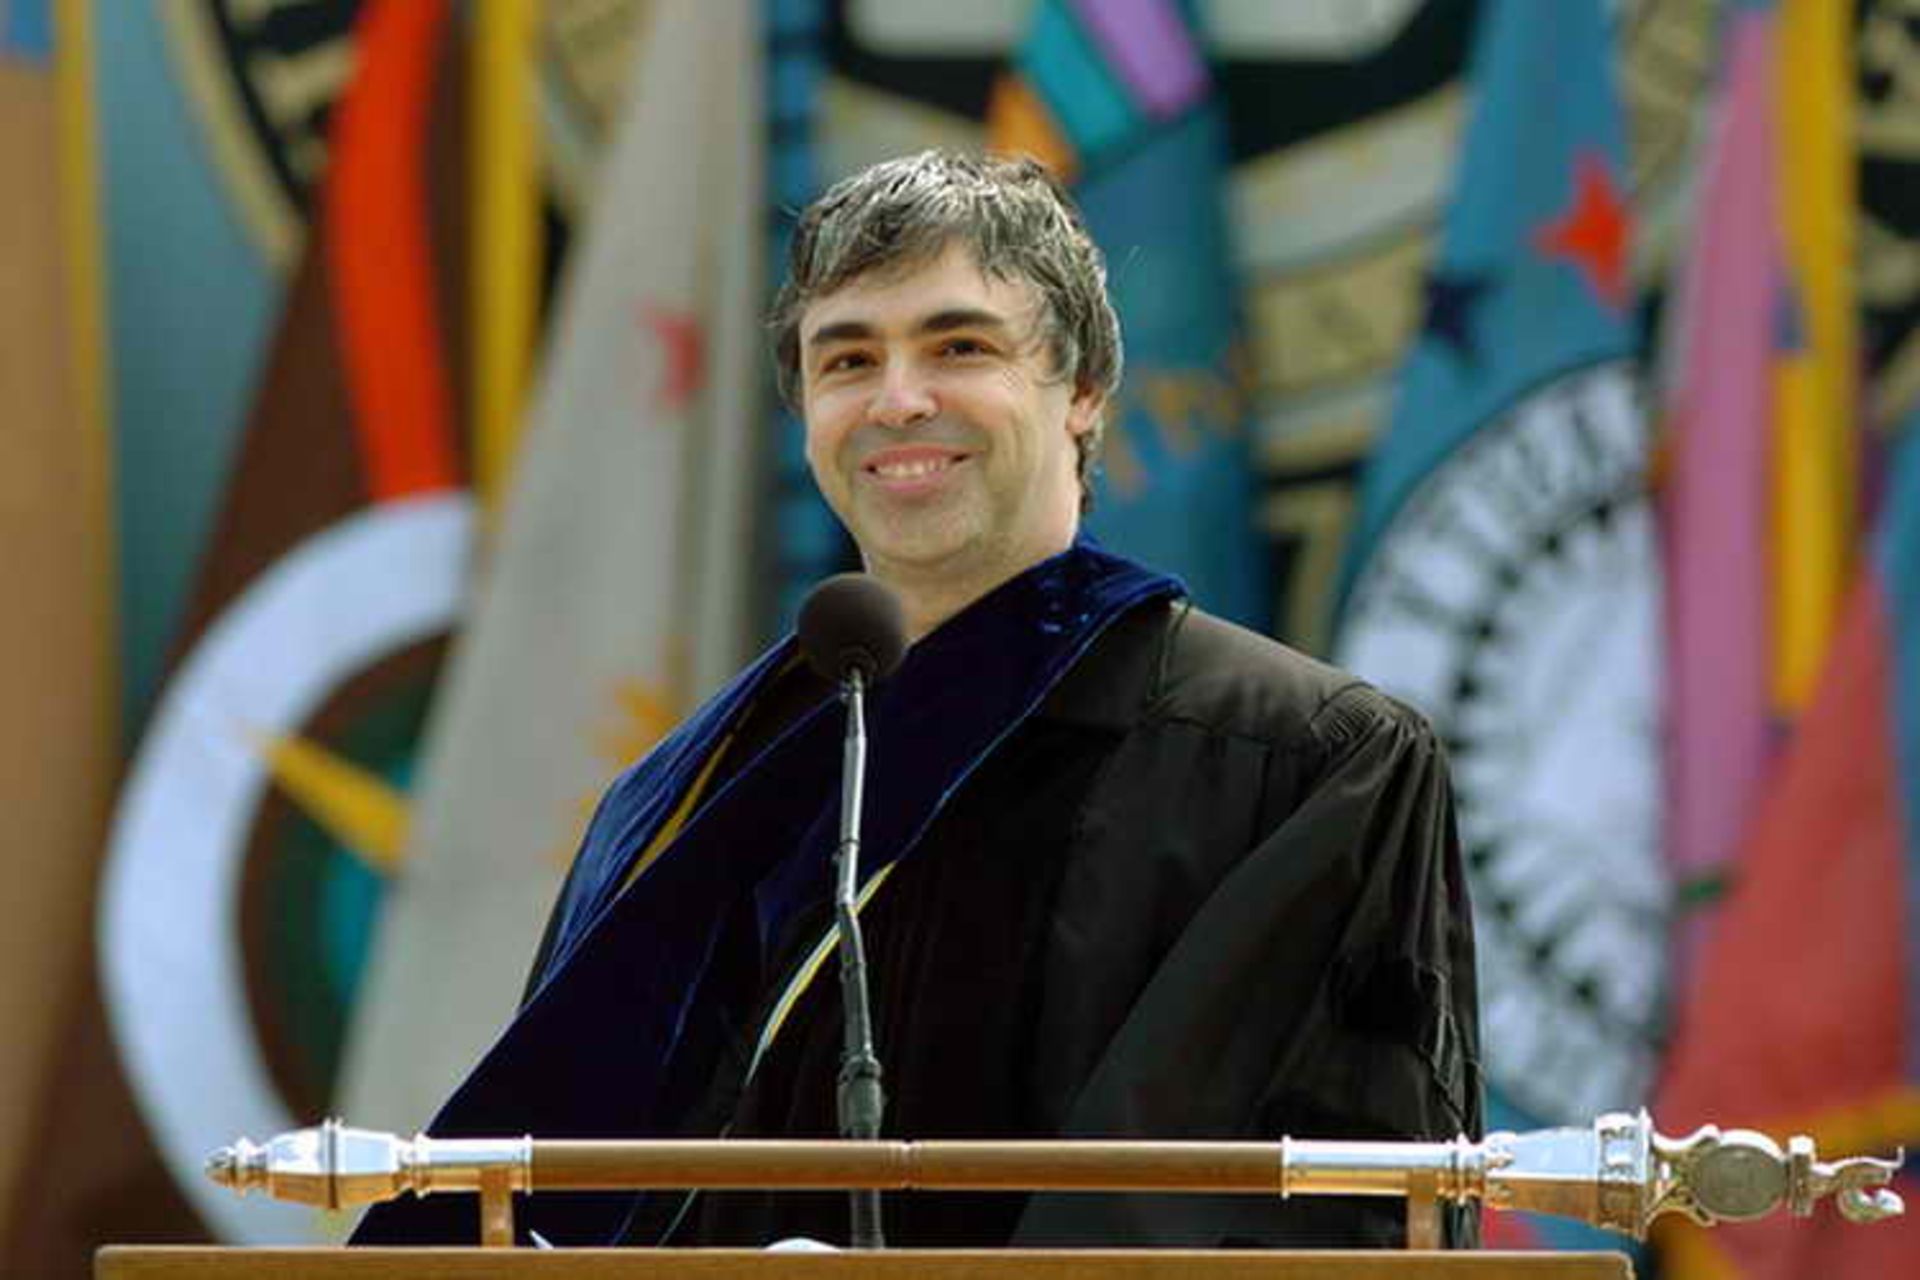 سخنرانی لری پیج در دانشگاه میشیگان سال ۲۰۰۹